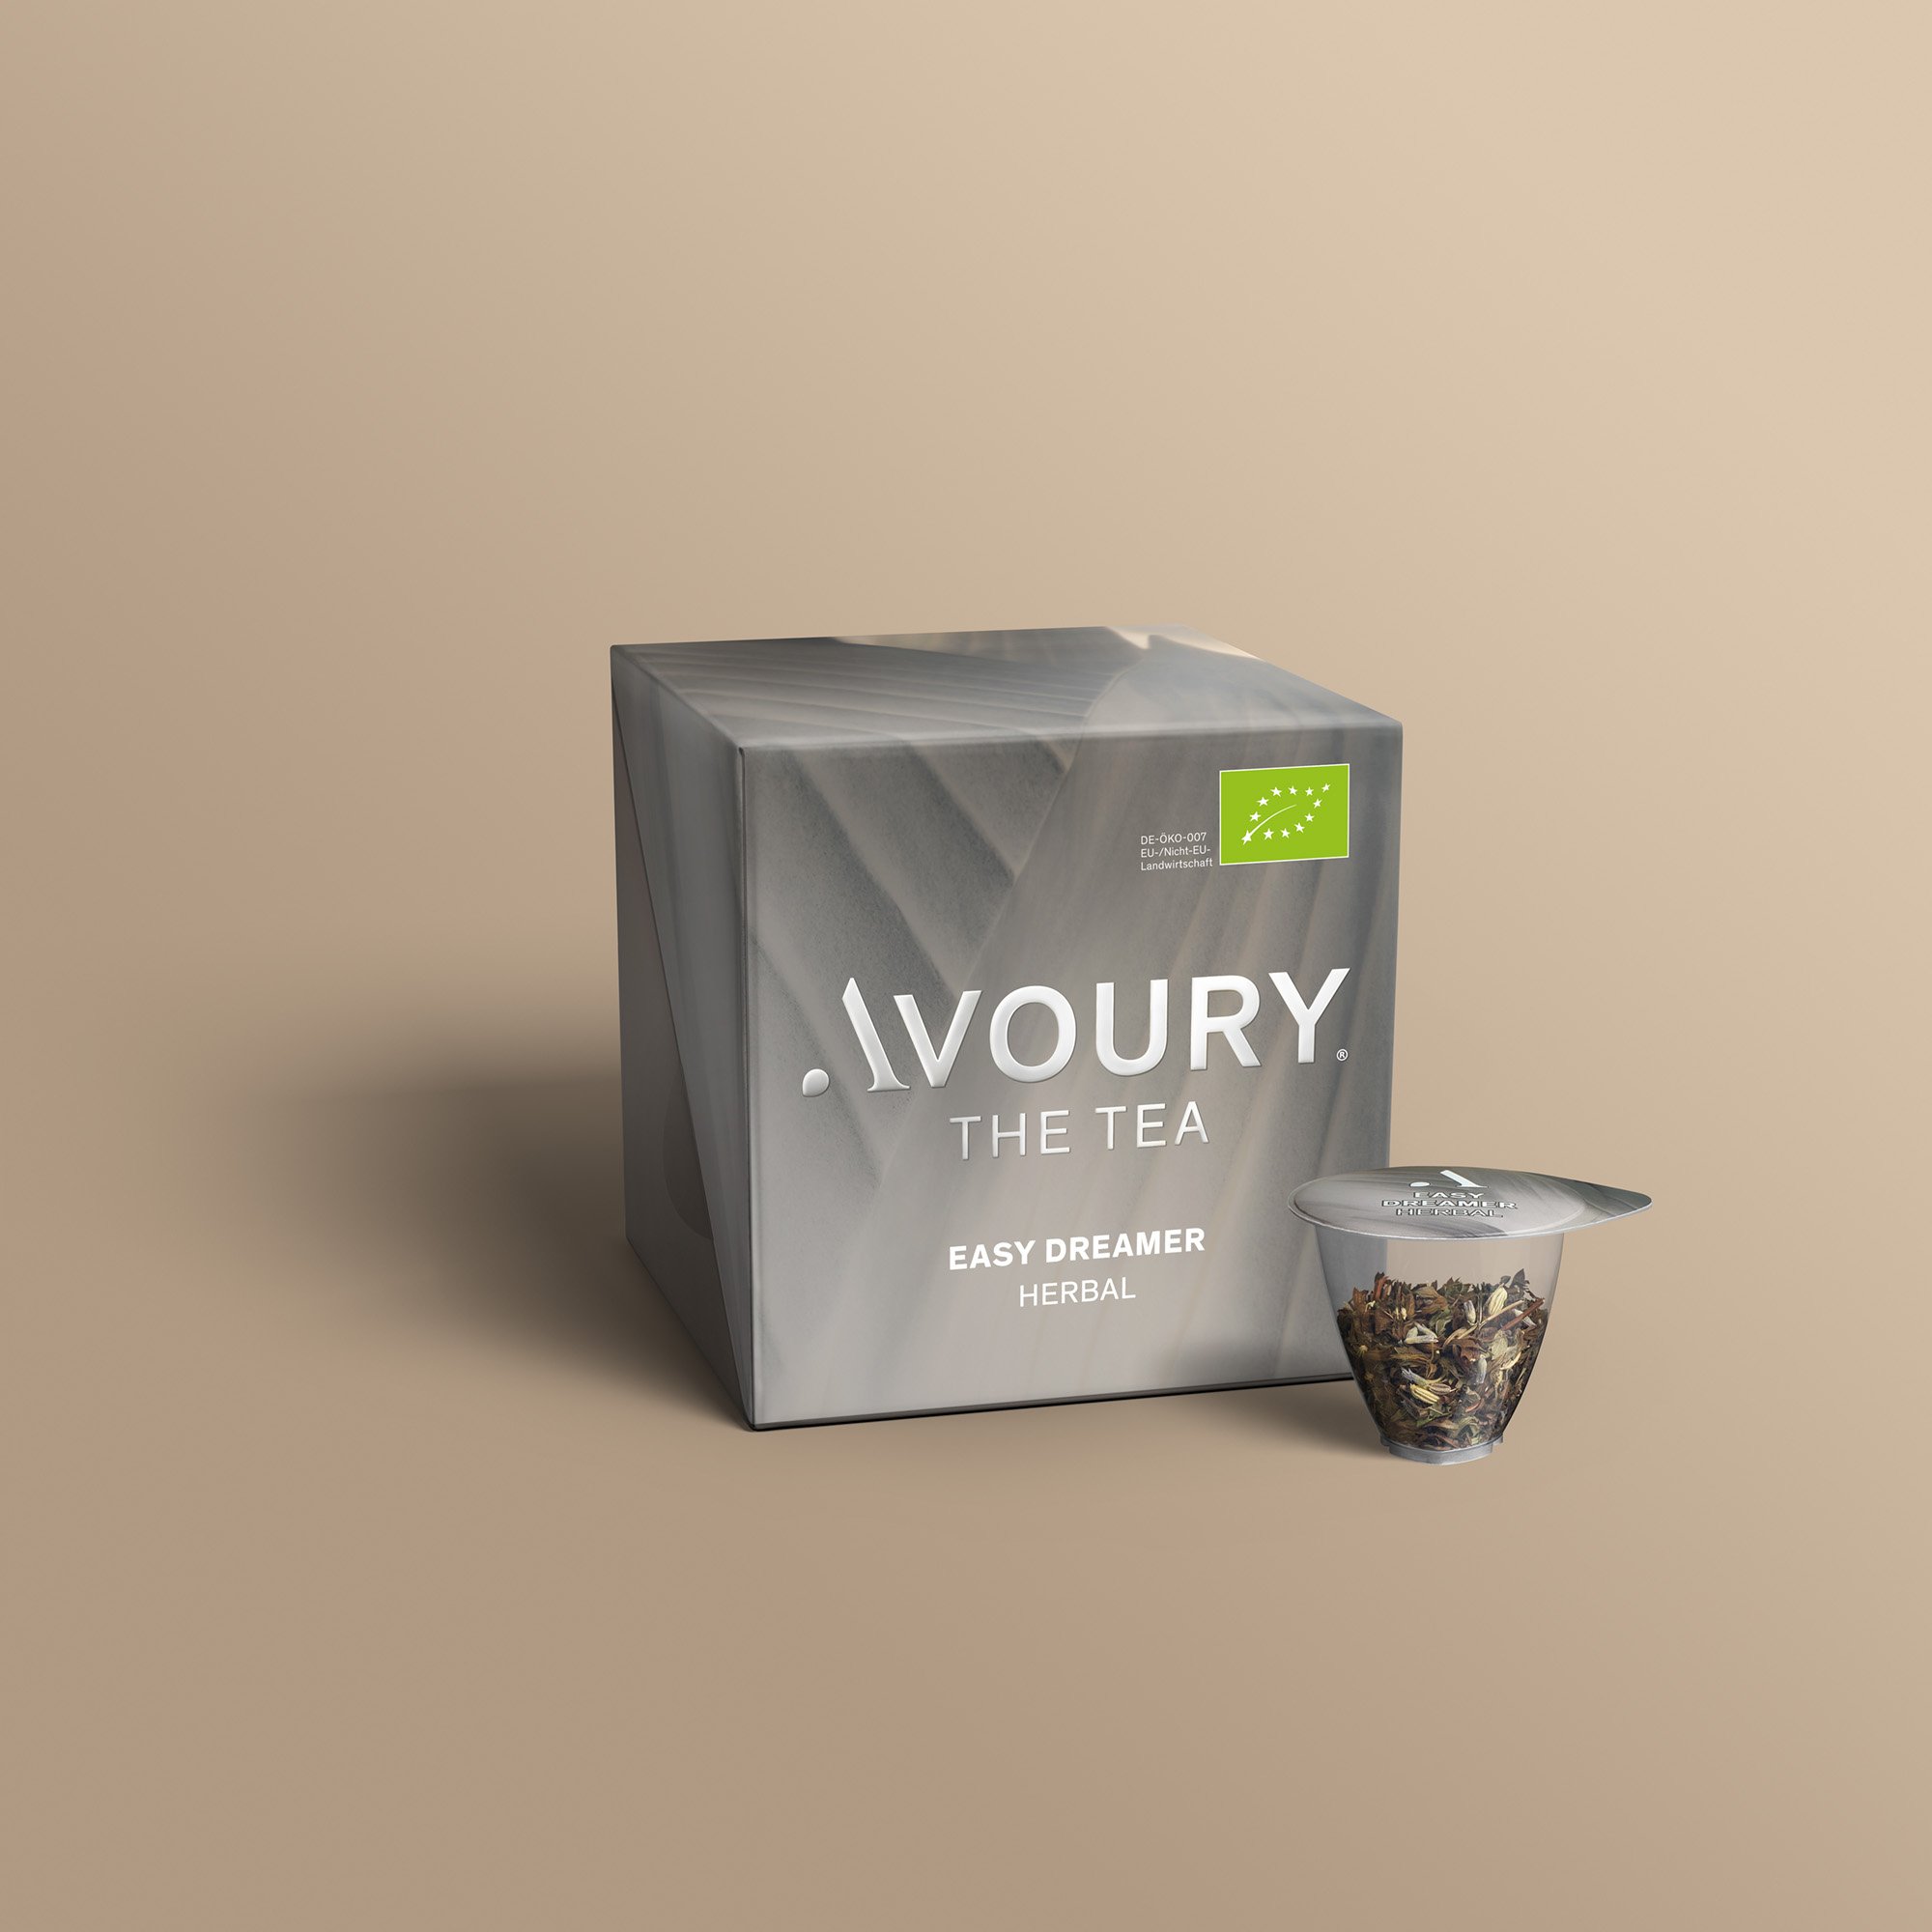 Easy Dreamer  | Avoury. The Tea.